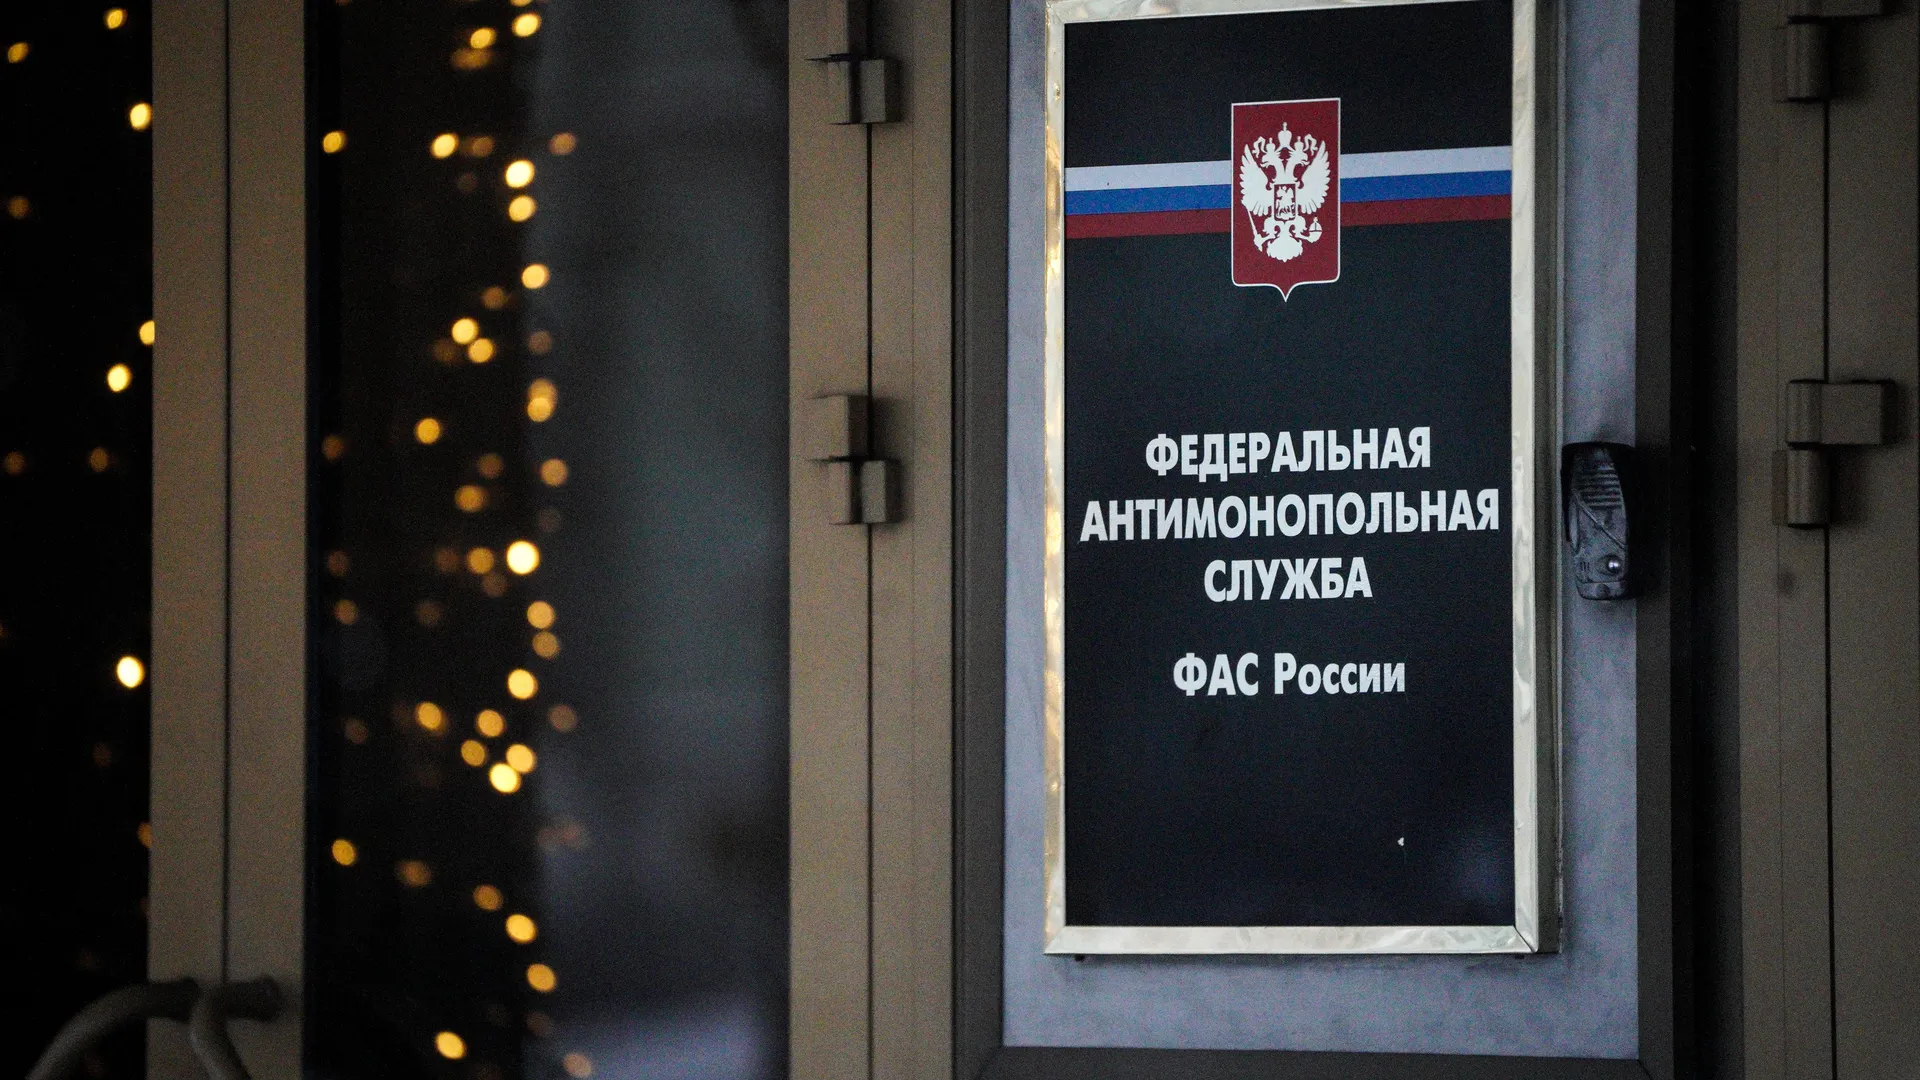 ПАО «Россети» оштрафовано за нарушение срока подключения к сетям в Домодедове